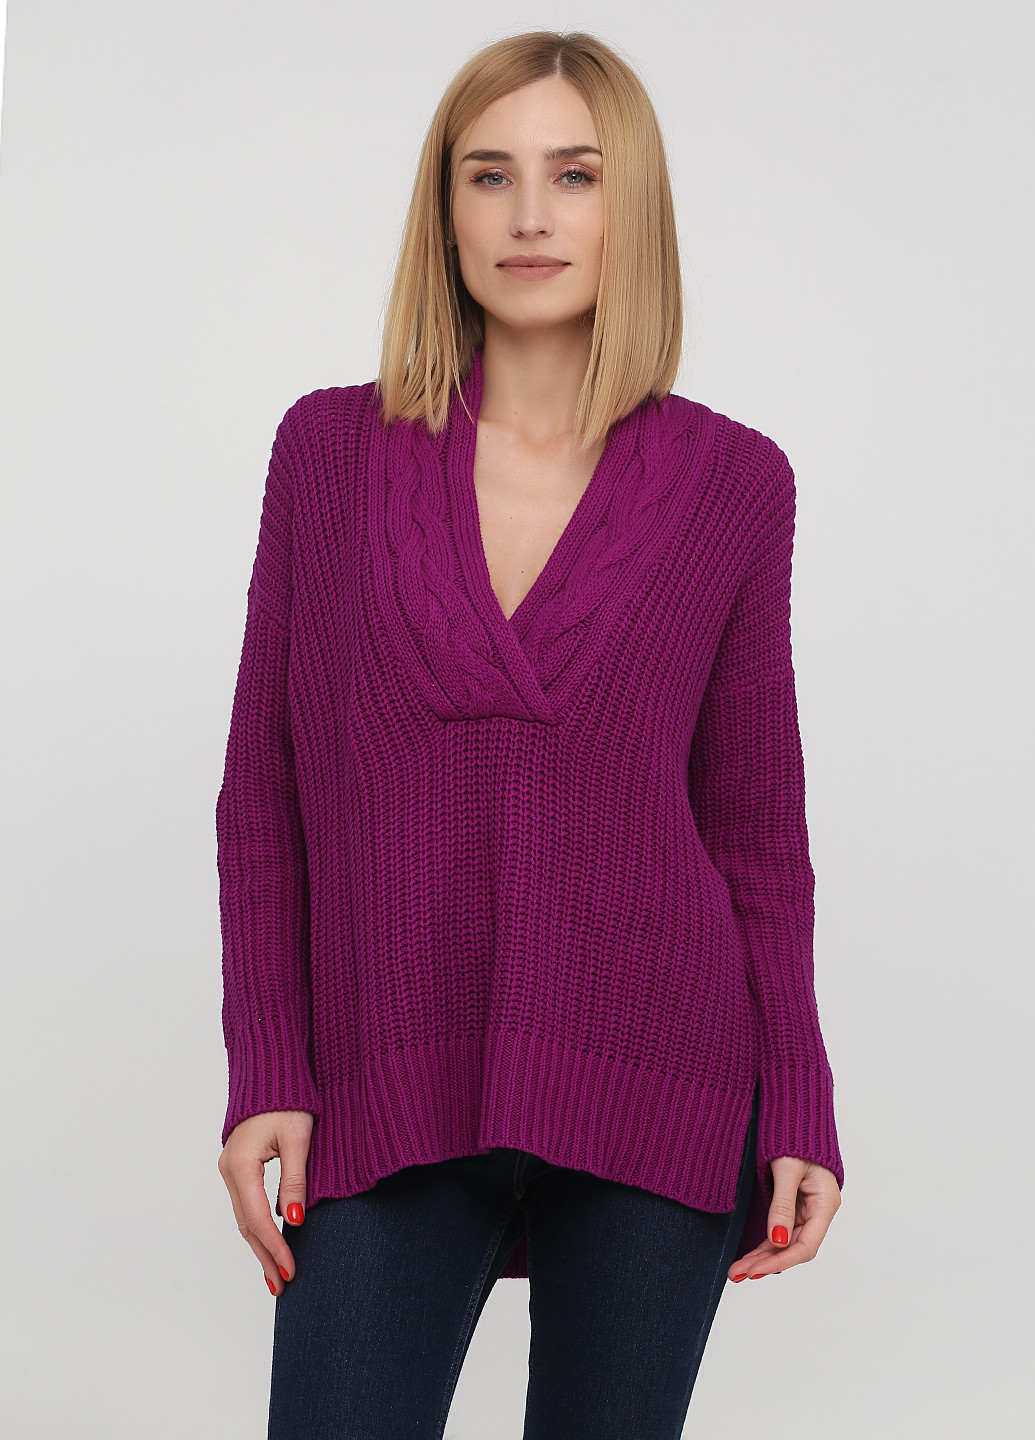 Пурпурный демисезонный пуловер пуловер Ralph Lauren